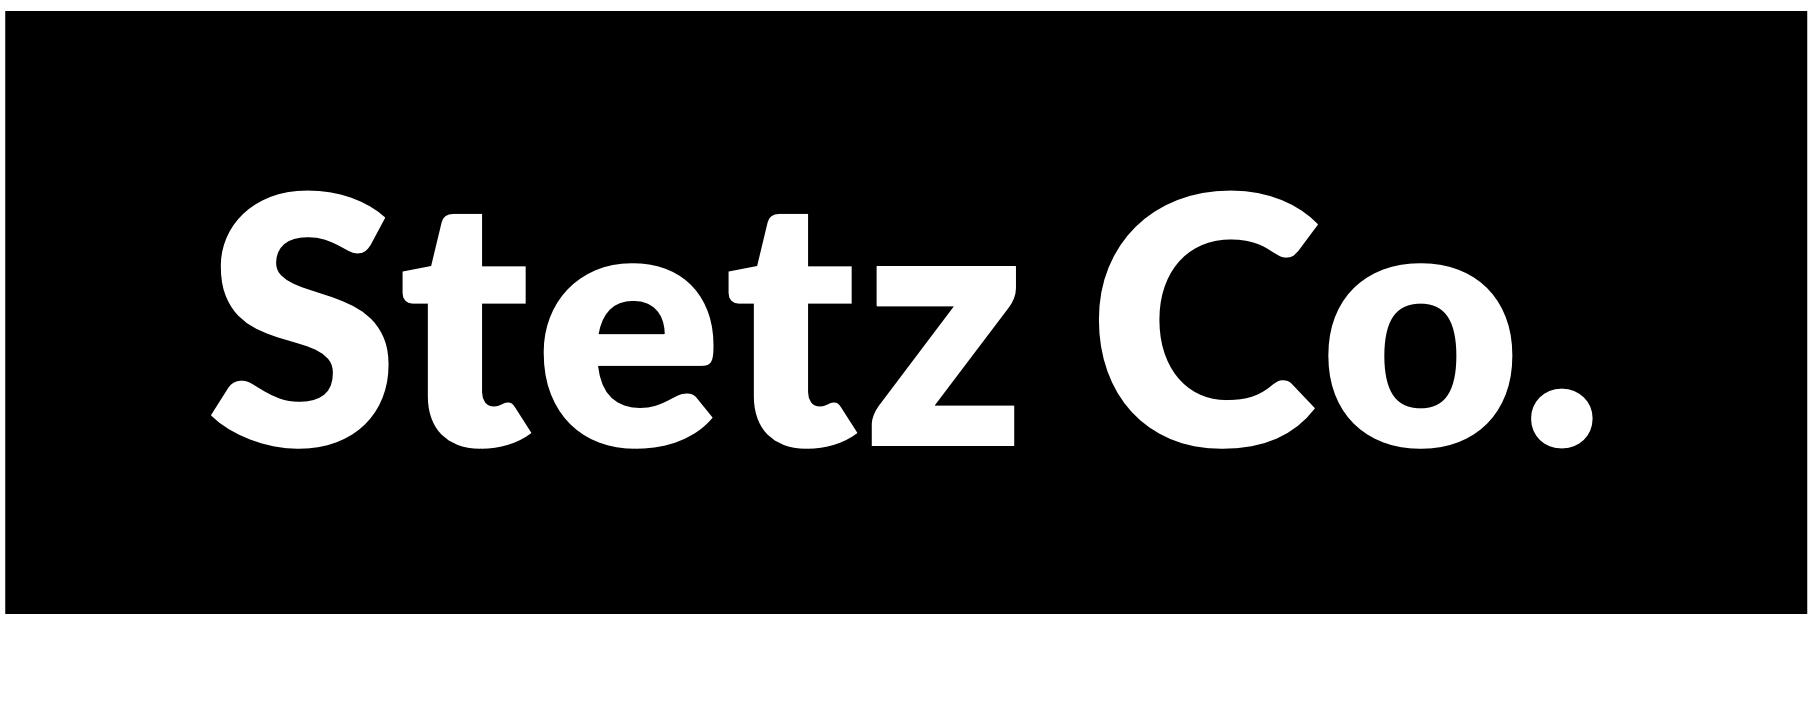 Stetz company